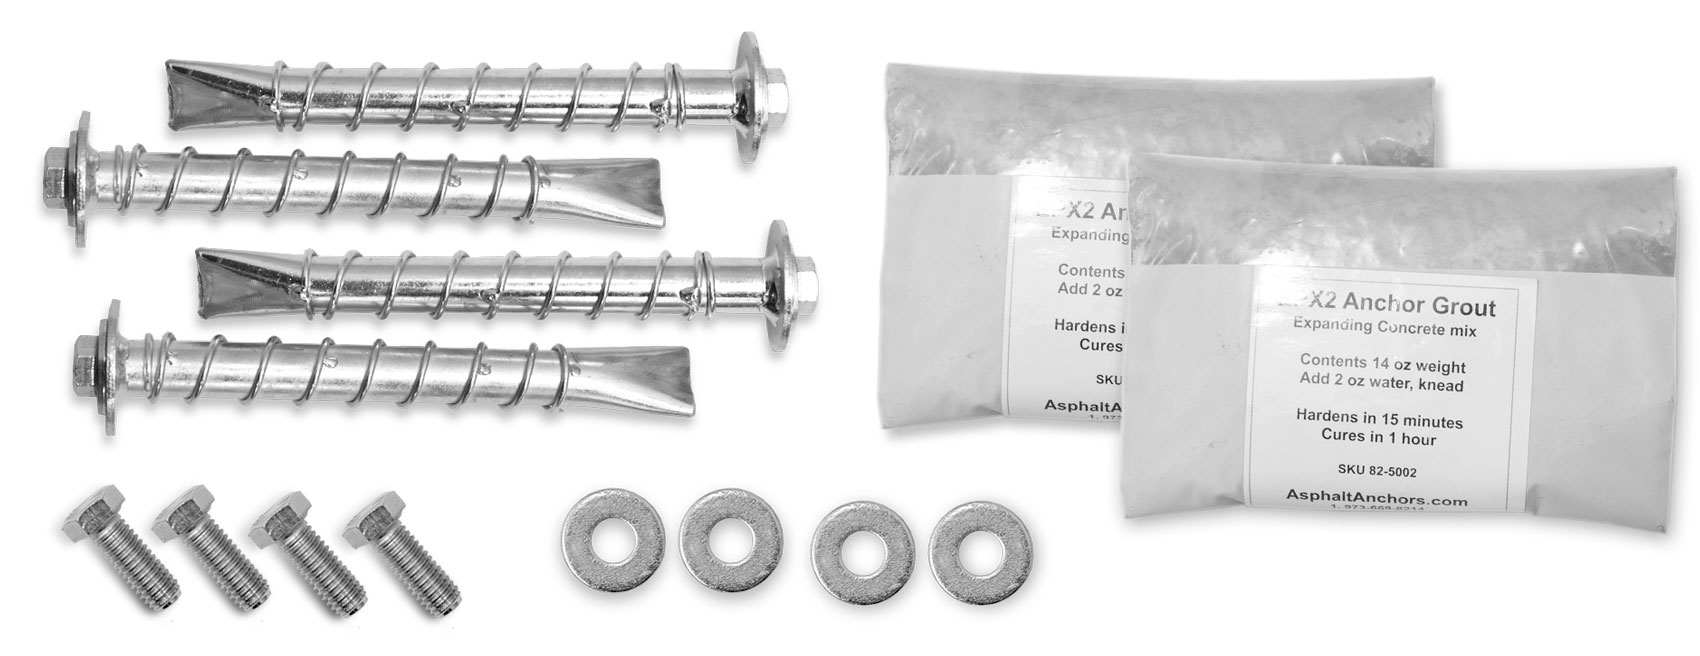 Asphalt Anchors Kit